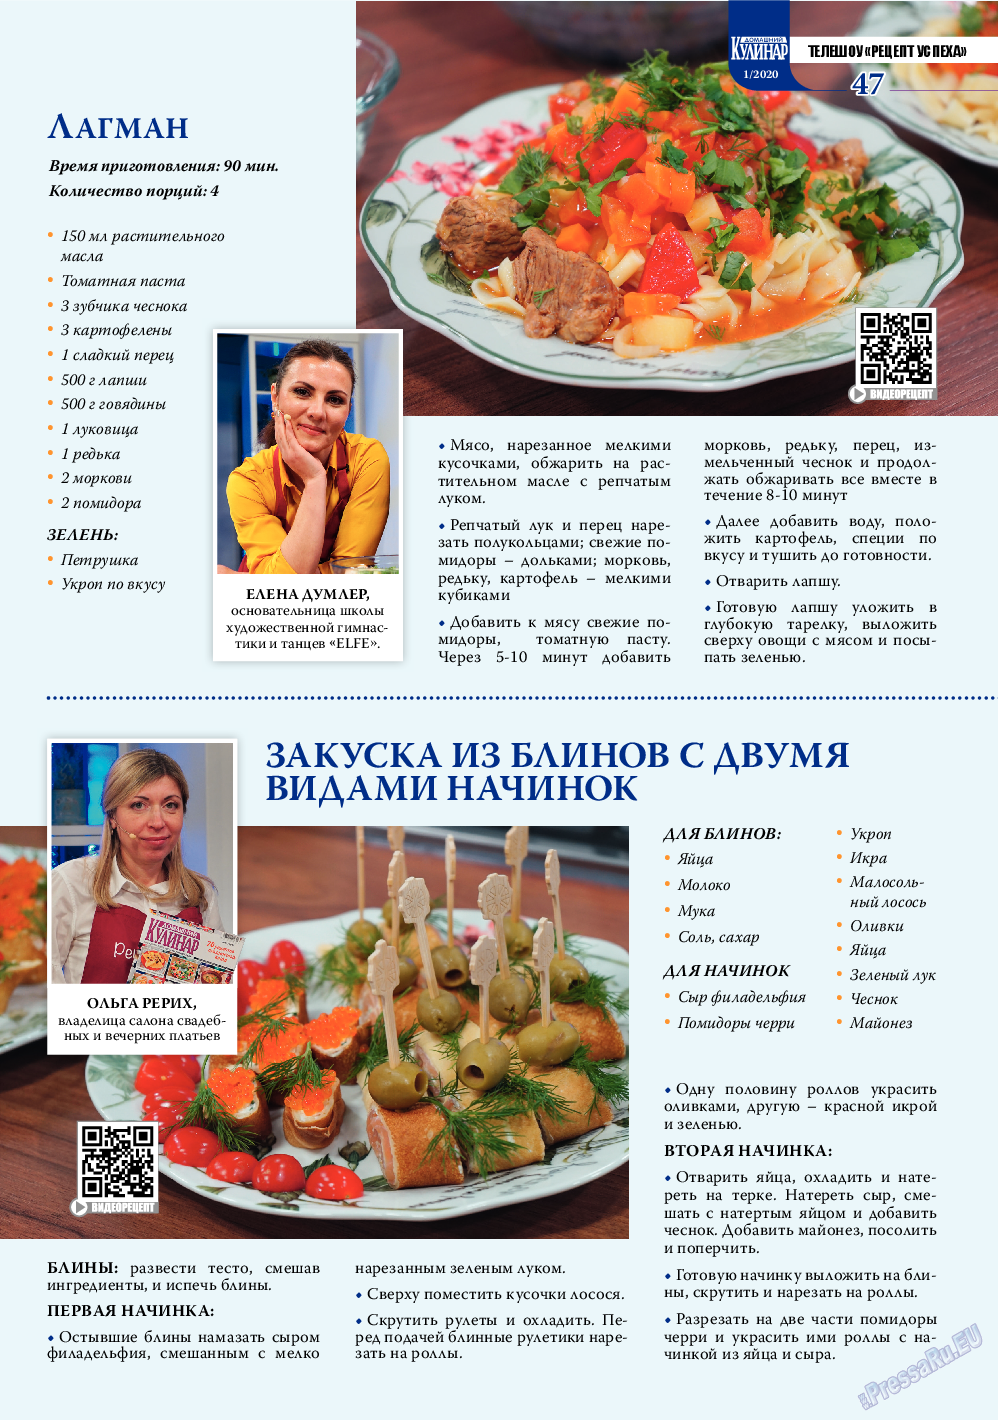 Домашний кулинар, журнал. 2020 №1 стр.47